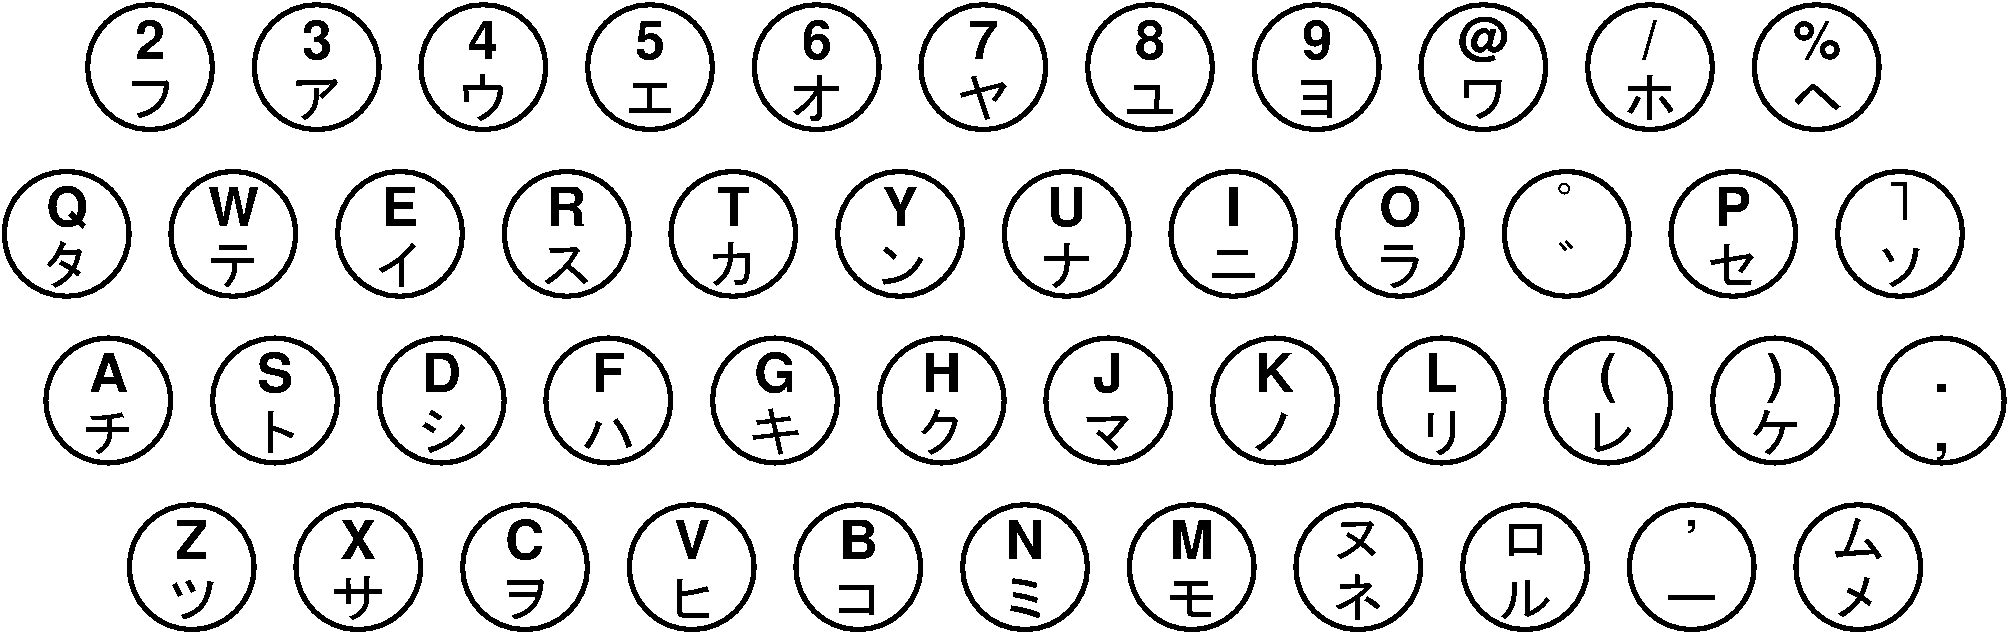 日本レミントンランド社のカナ・ローマ字タイプライターキー配列